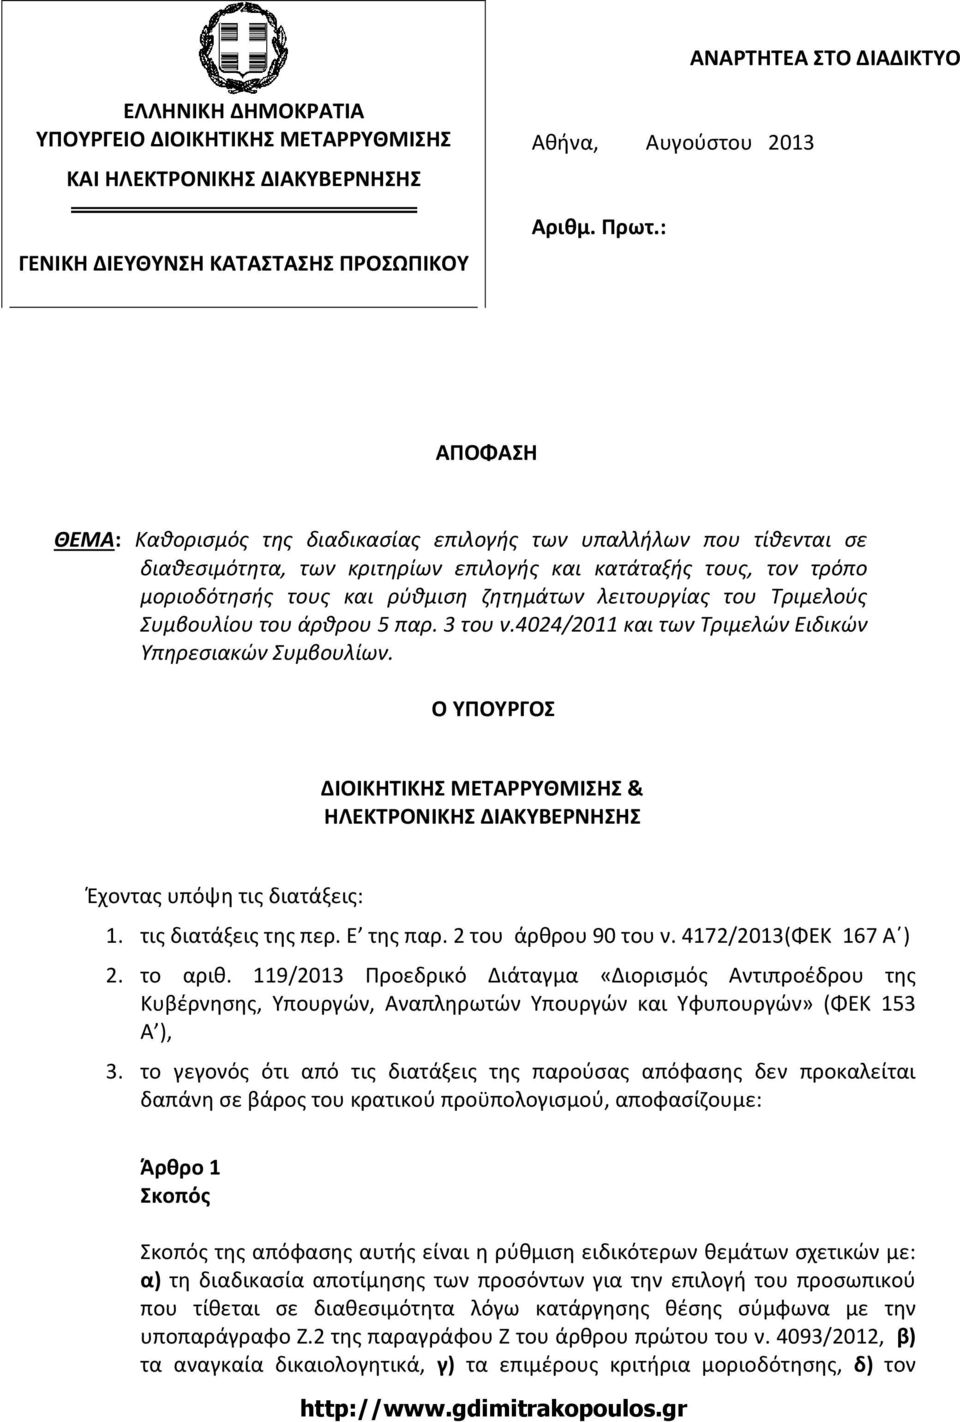 λειτουργίας του Τριμελούς Συμβουλίου του άρθρου 5 παρ. 3 του ν.4024/2011 και των Τριμελών Ειδικών Υπηρεσιακών Συμβουλίων.